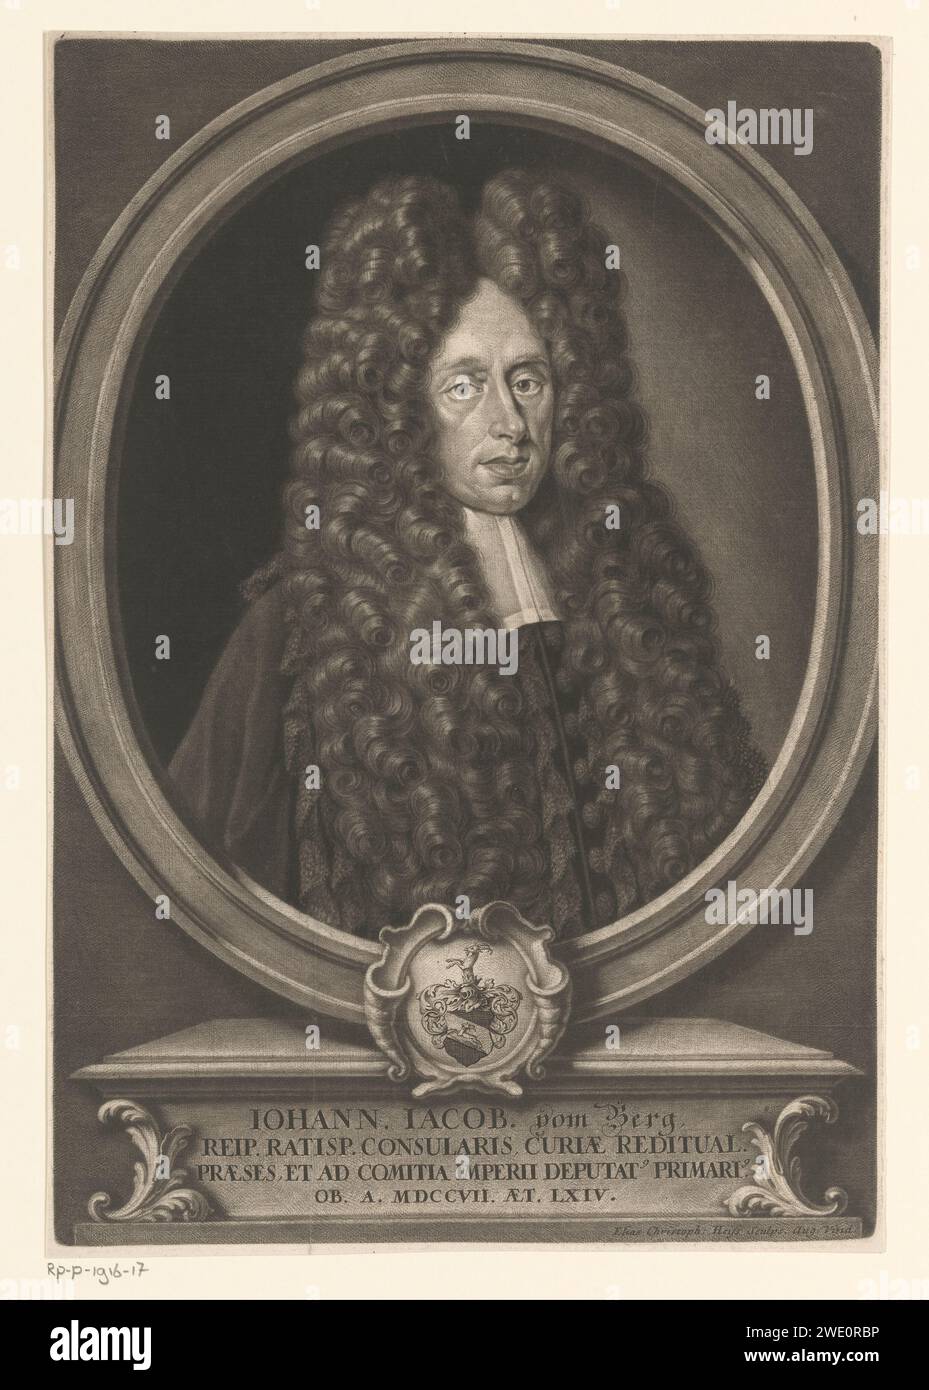 Ritratto di Johann Jacob Vom Berg all'età di 64 anni, Elias Christopf Heiss, 1707 - 1708 stampa Augsburg paper Historical Persons. cuscinetto araldico Foto Stock